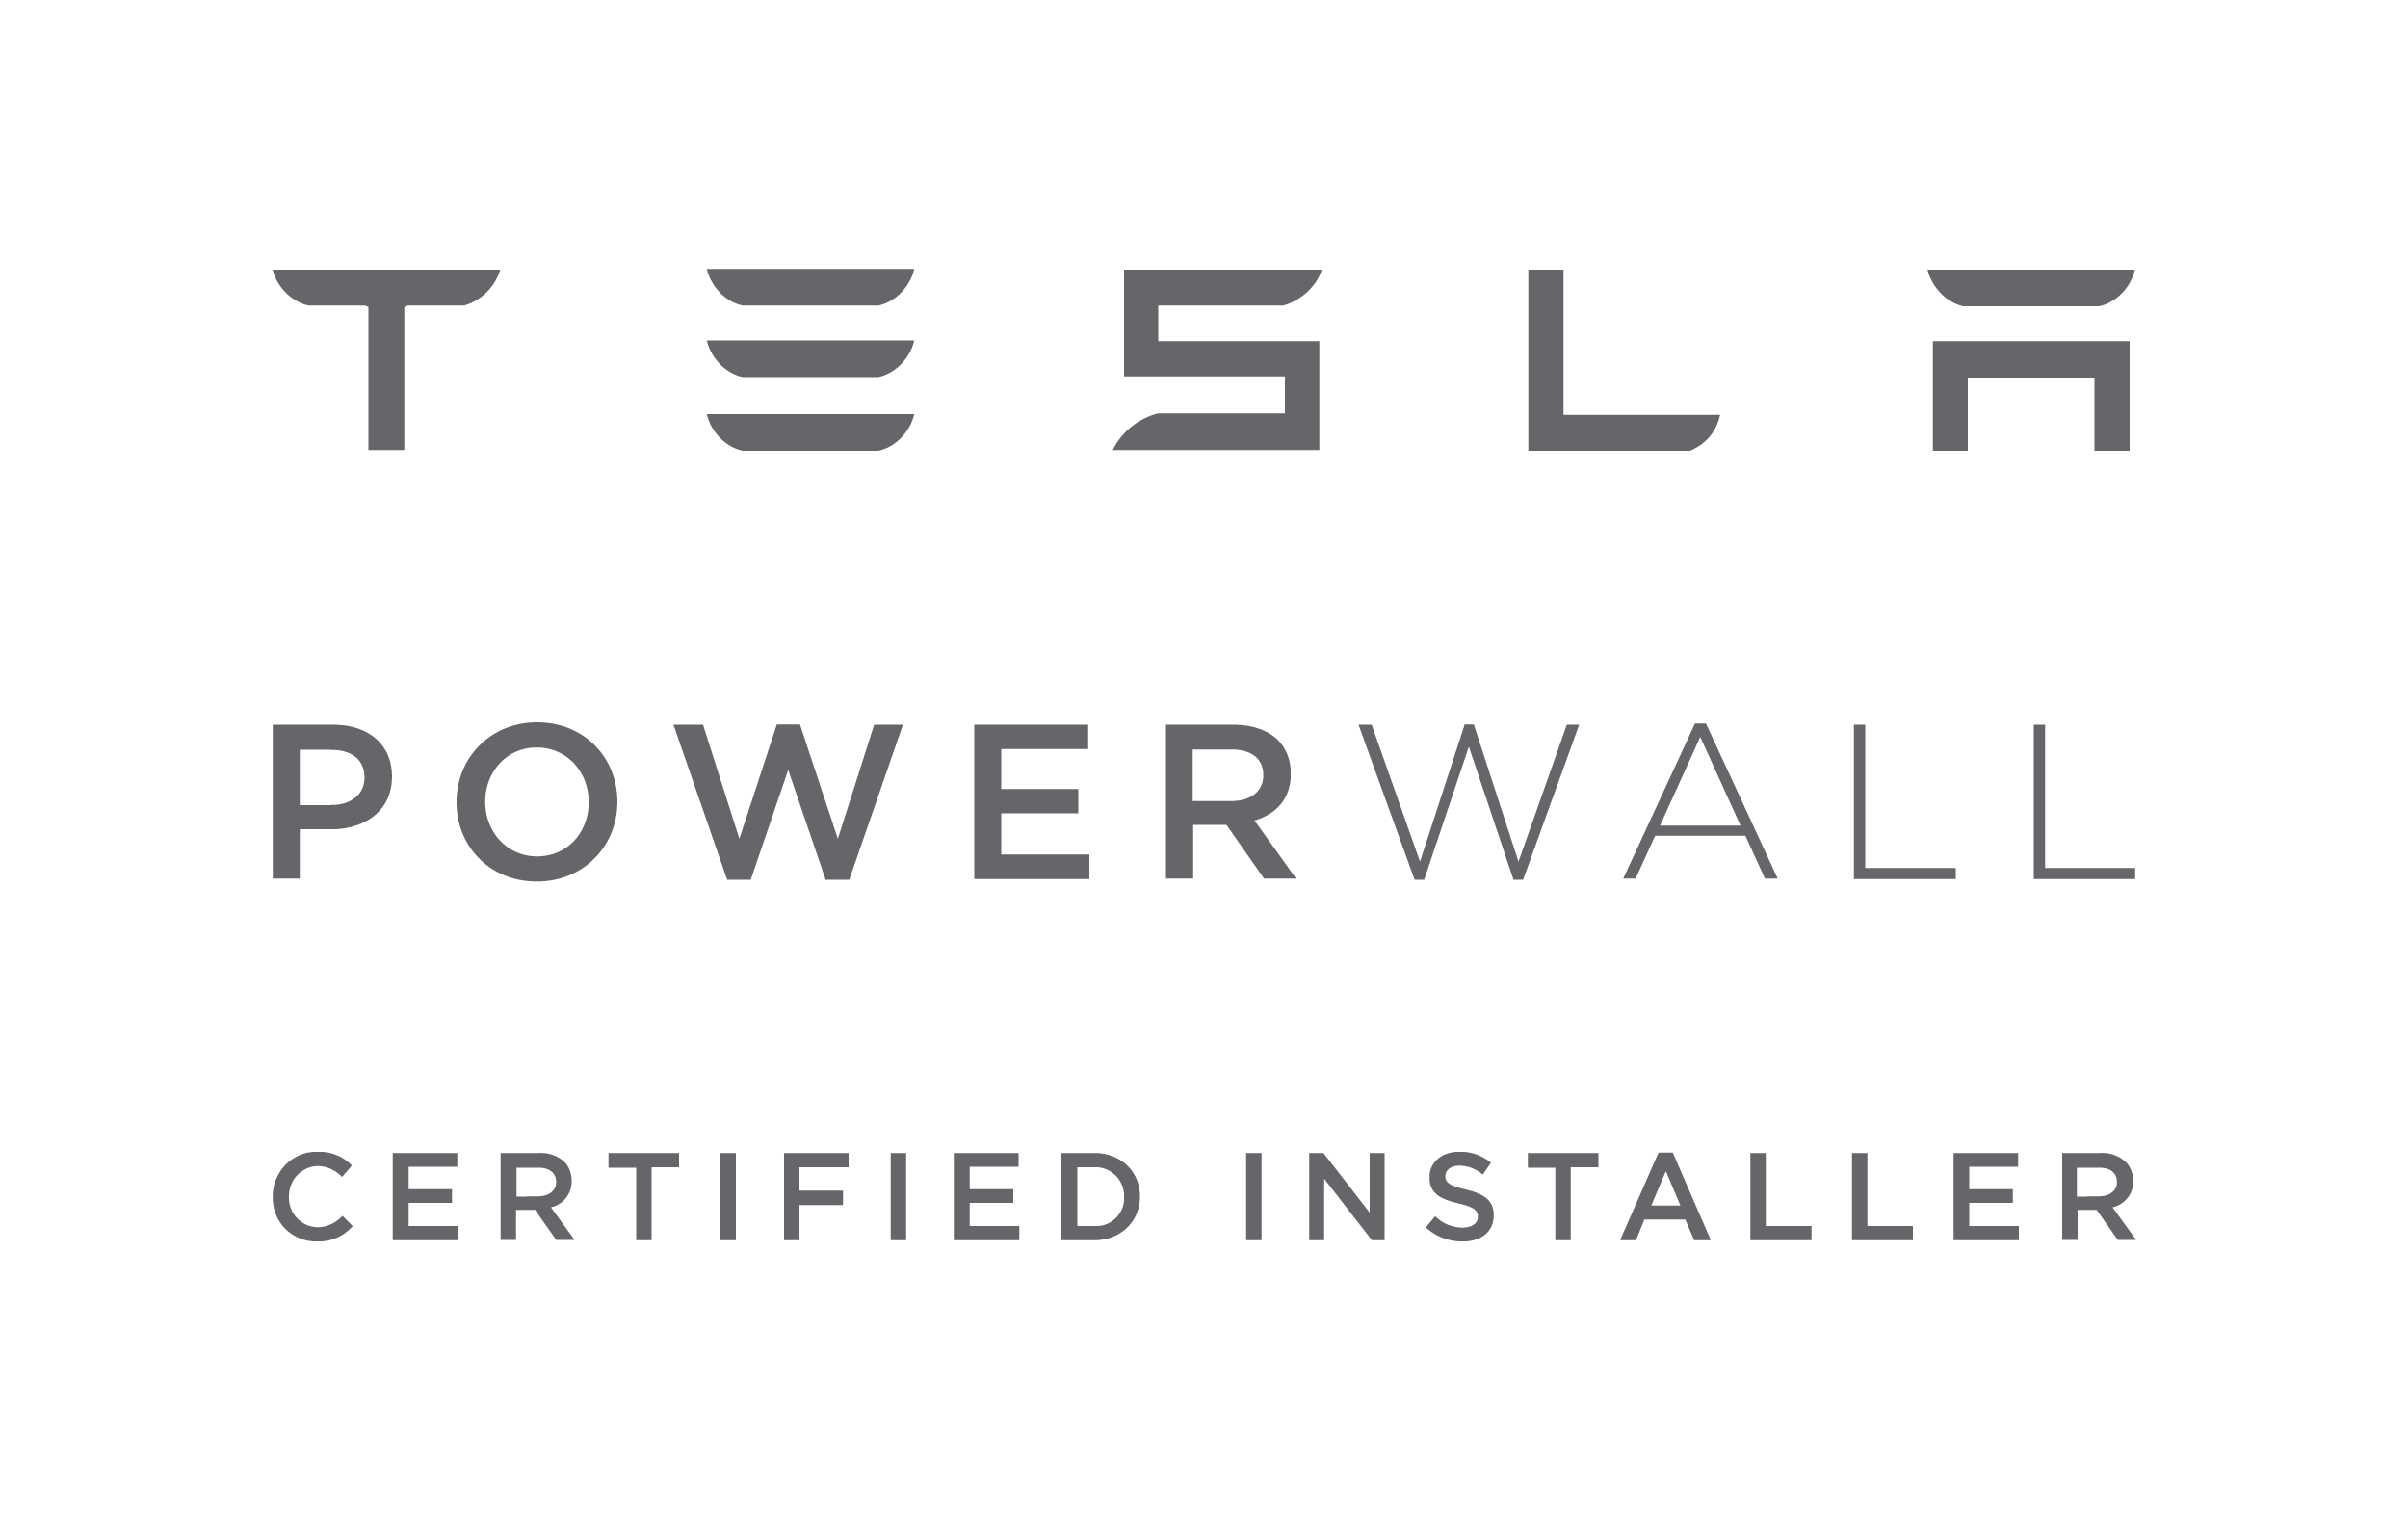 Powerwall Certified Installer